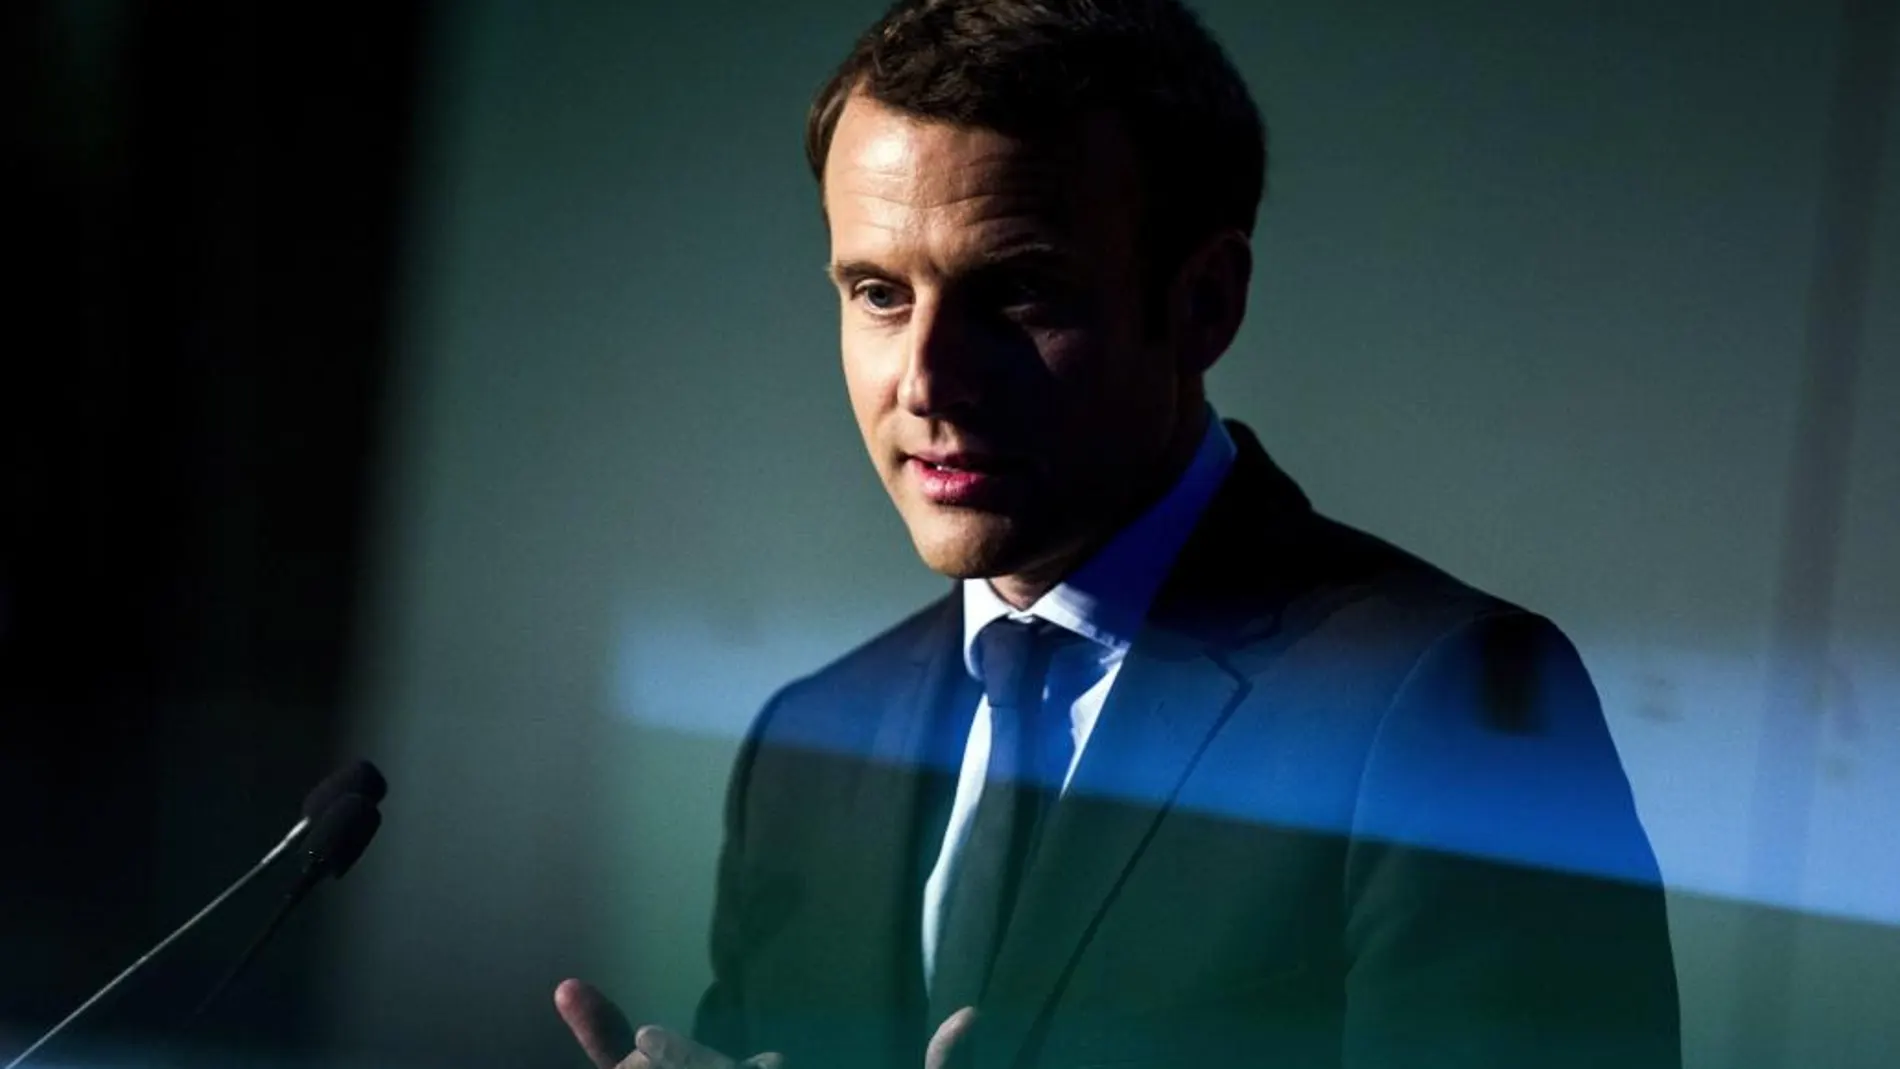 El candidato presidencial Emmanuel Macron, del movimiento socioliberal En Marcha, durante un acto de campaña en París (Francia).